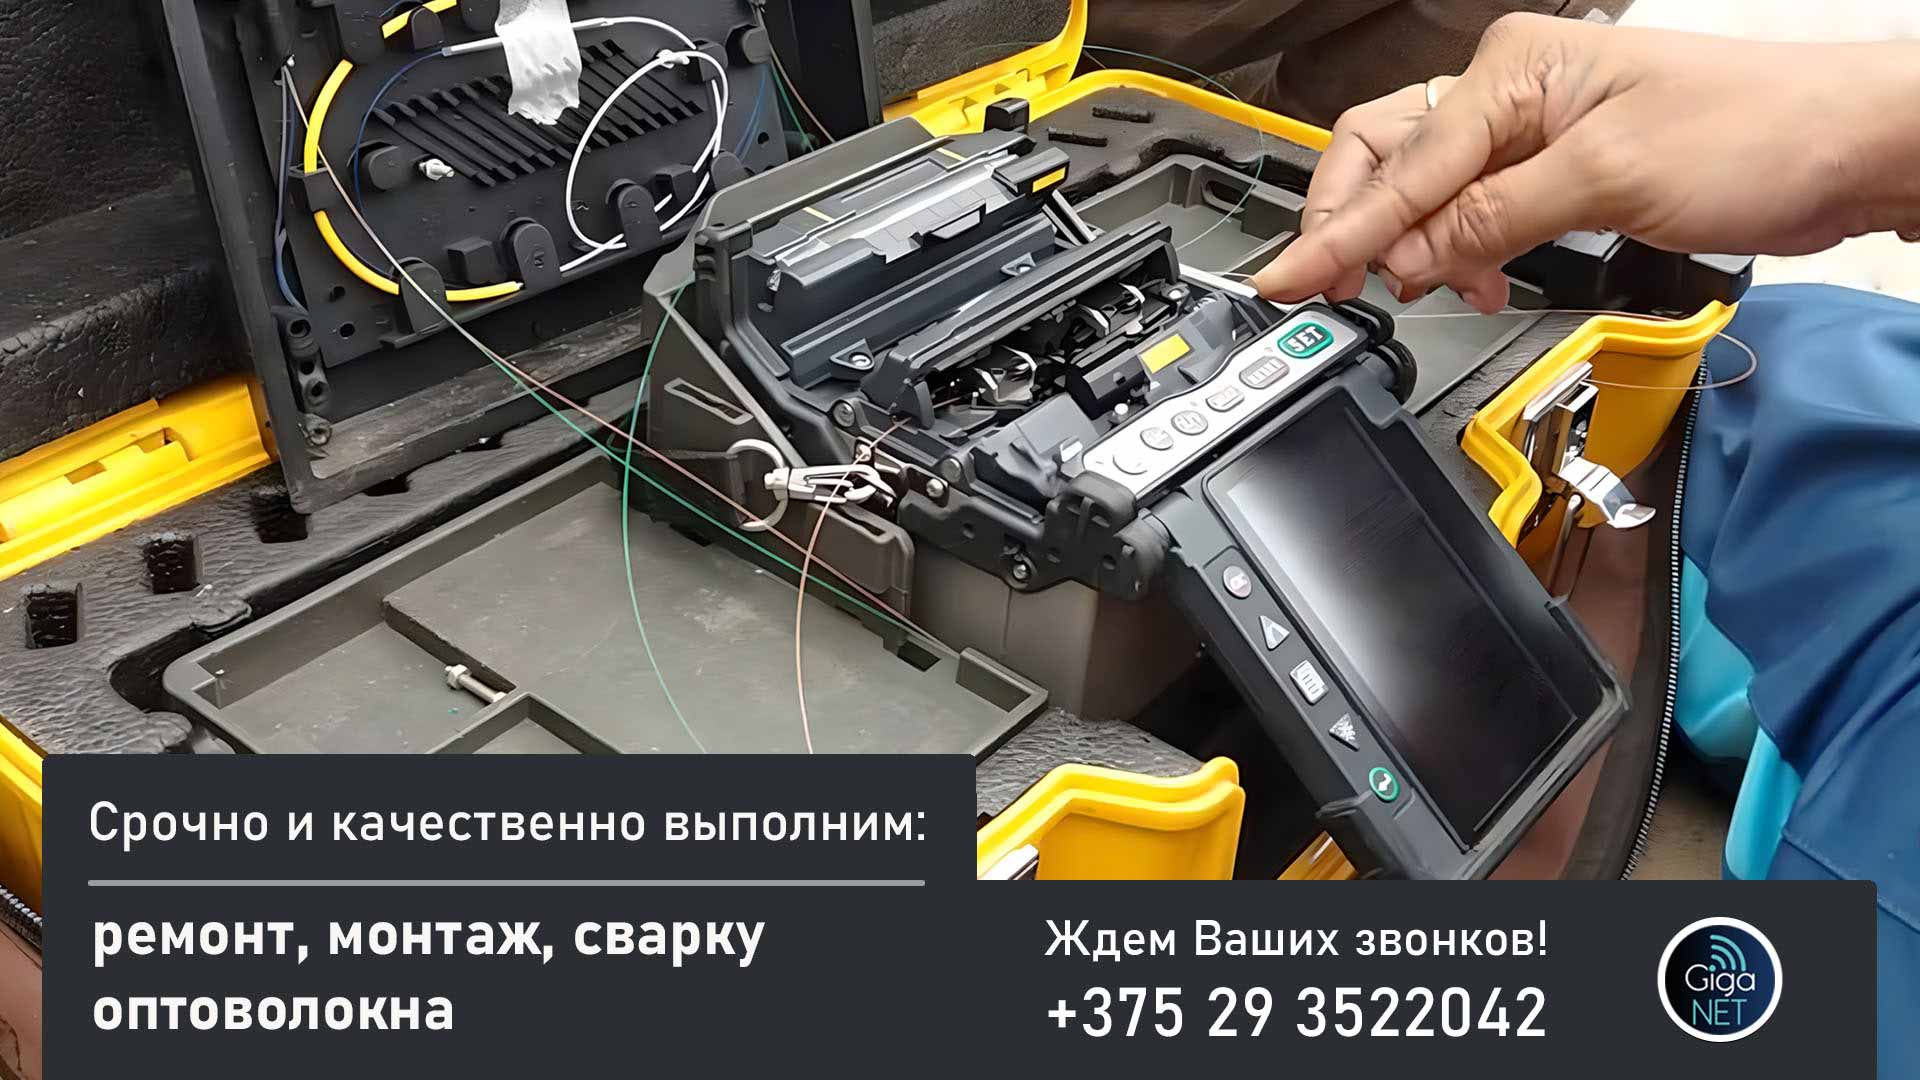 Ремонт оптоволокна, сварка оптического кабеля (ВОЛС) в Минске и РБ